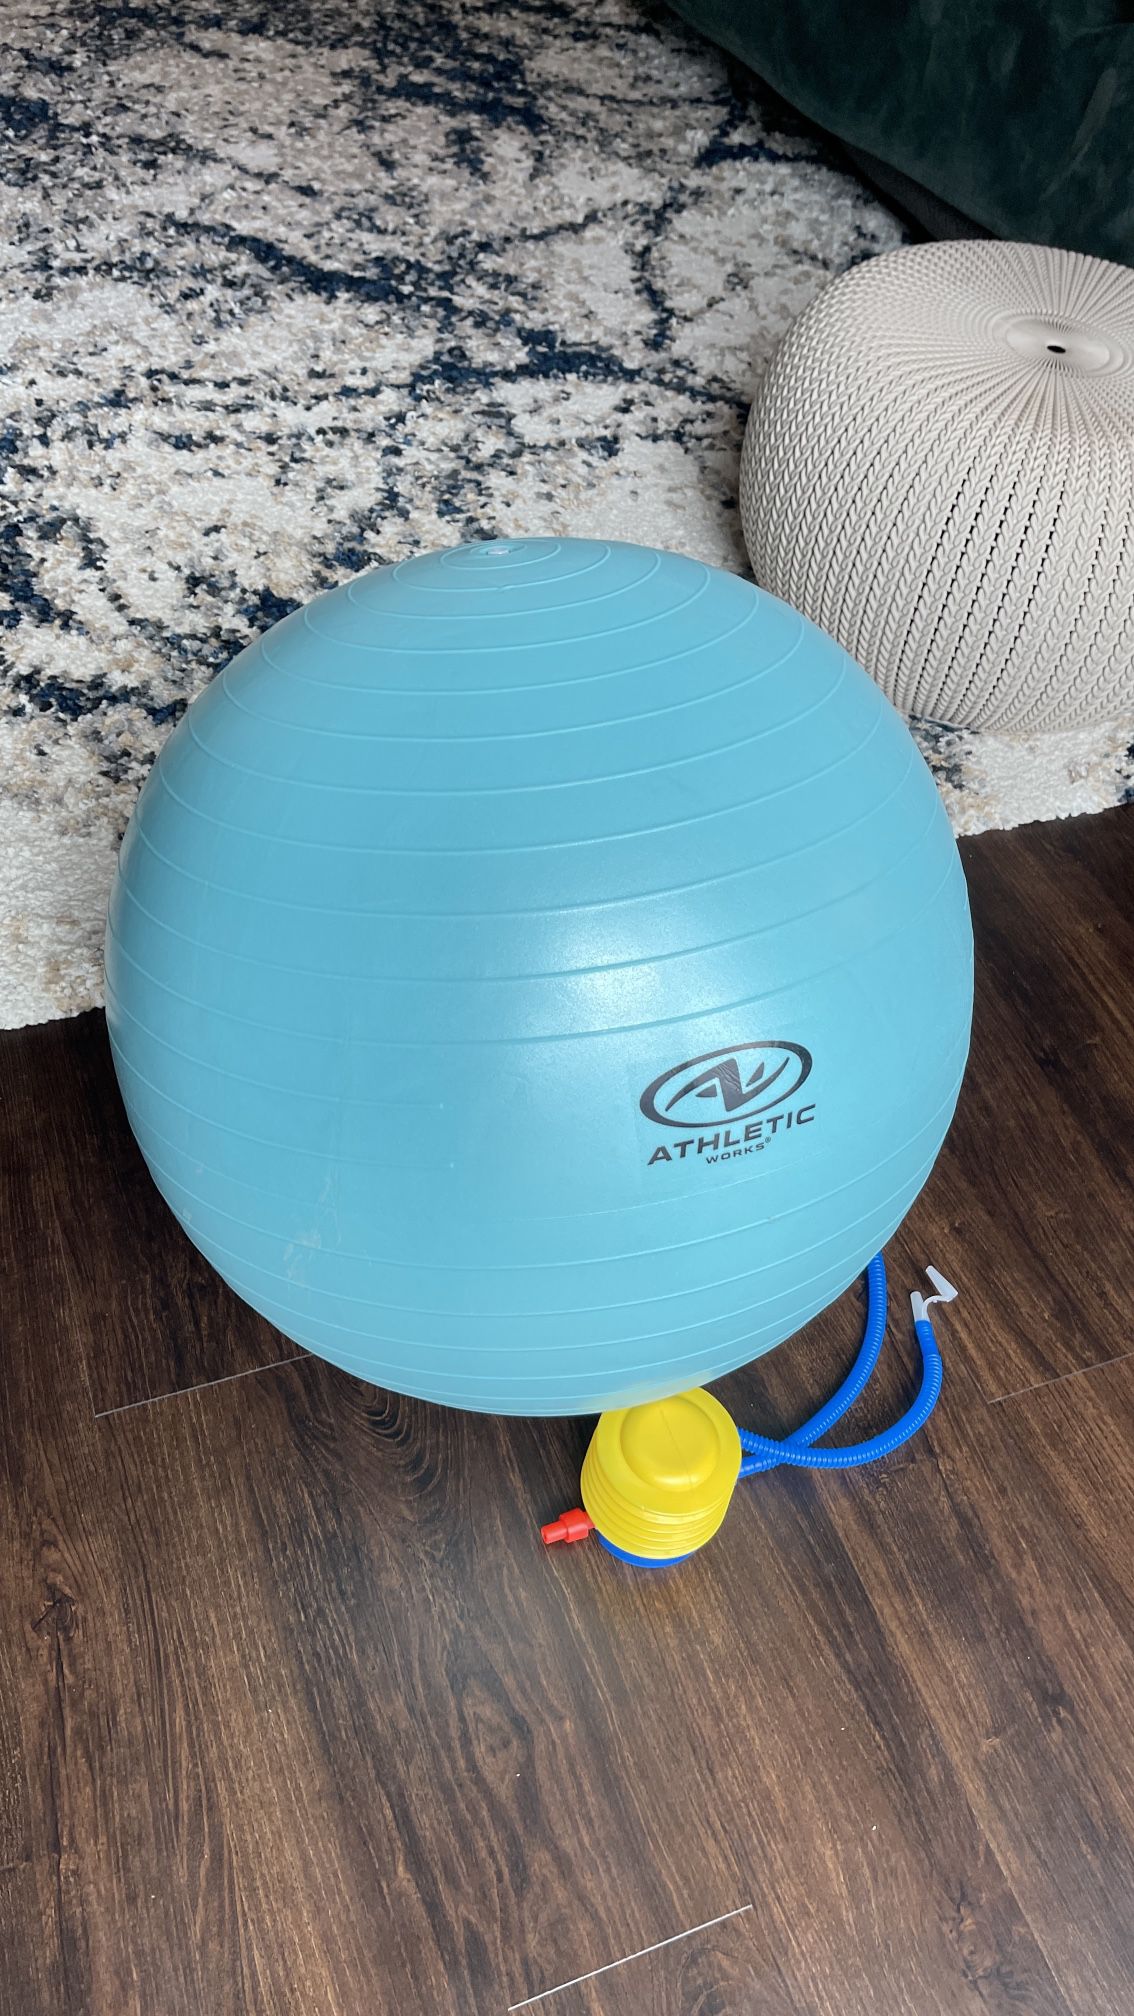 Exercise ball. Sparingly used. Medium sized. 